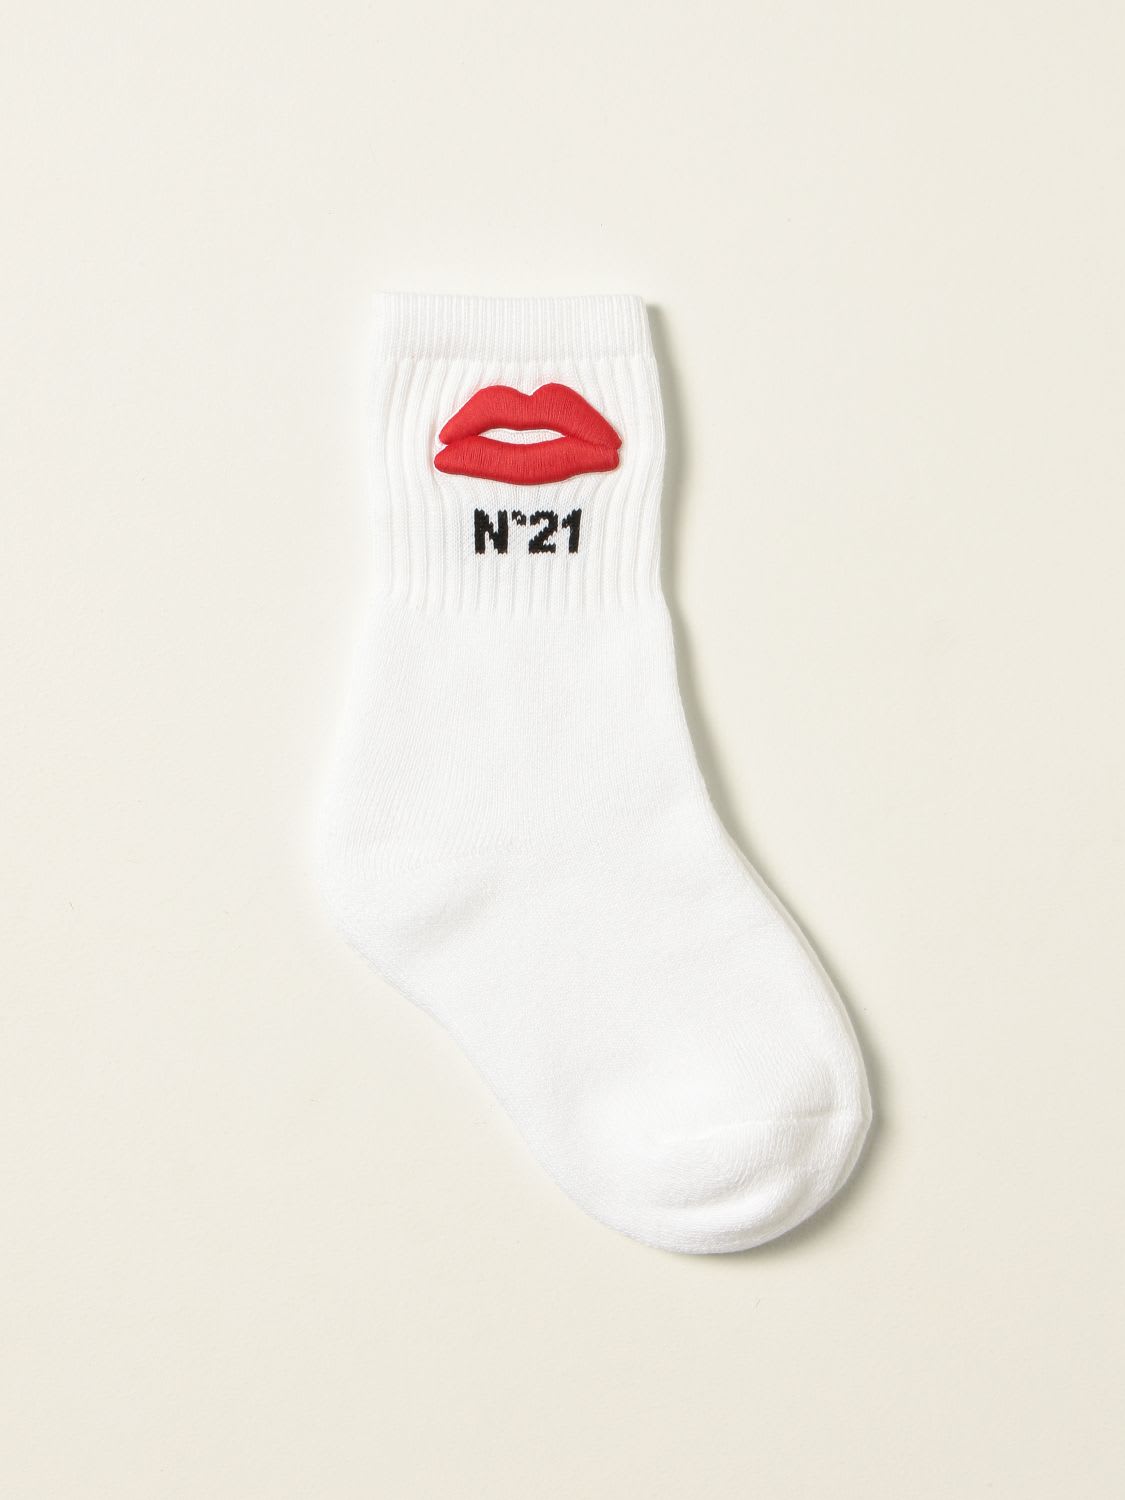 N.21 N° 21 Socks N ° 21 Socks With Logo And Mouth